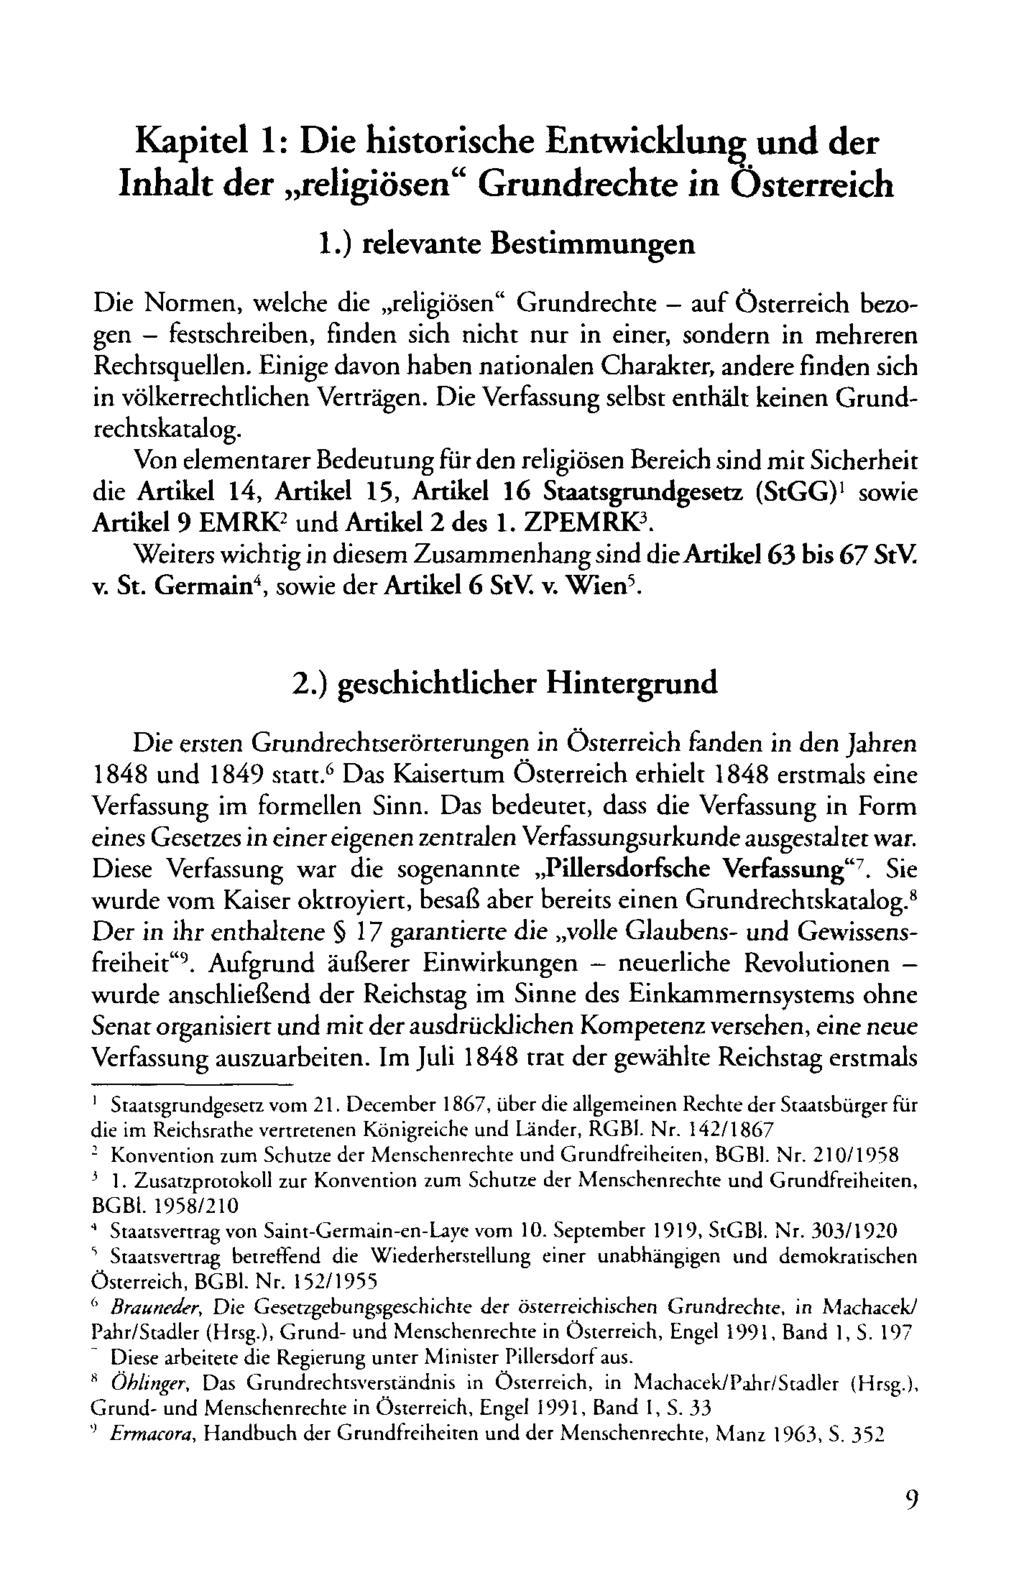 Kapitel 1: Die historische Entwicklune und der Inhalt der,,religiosen" Grundrechte in Osterreich 1.